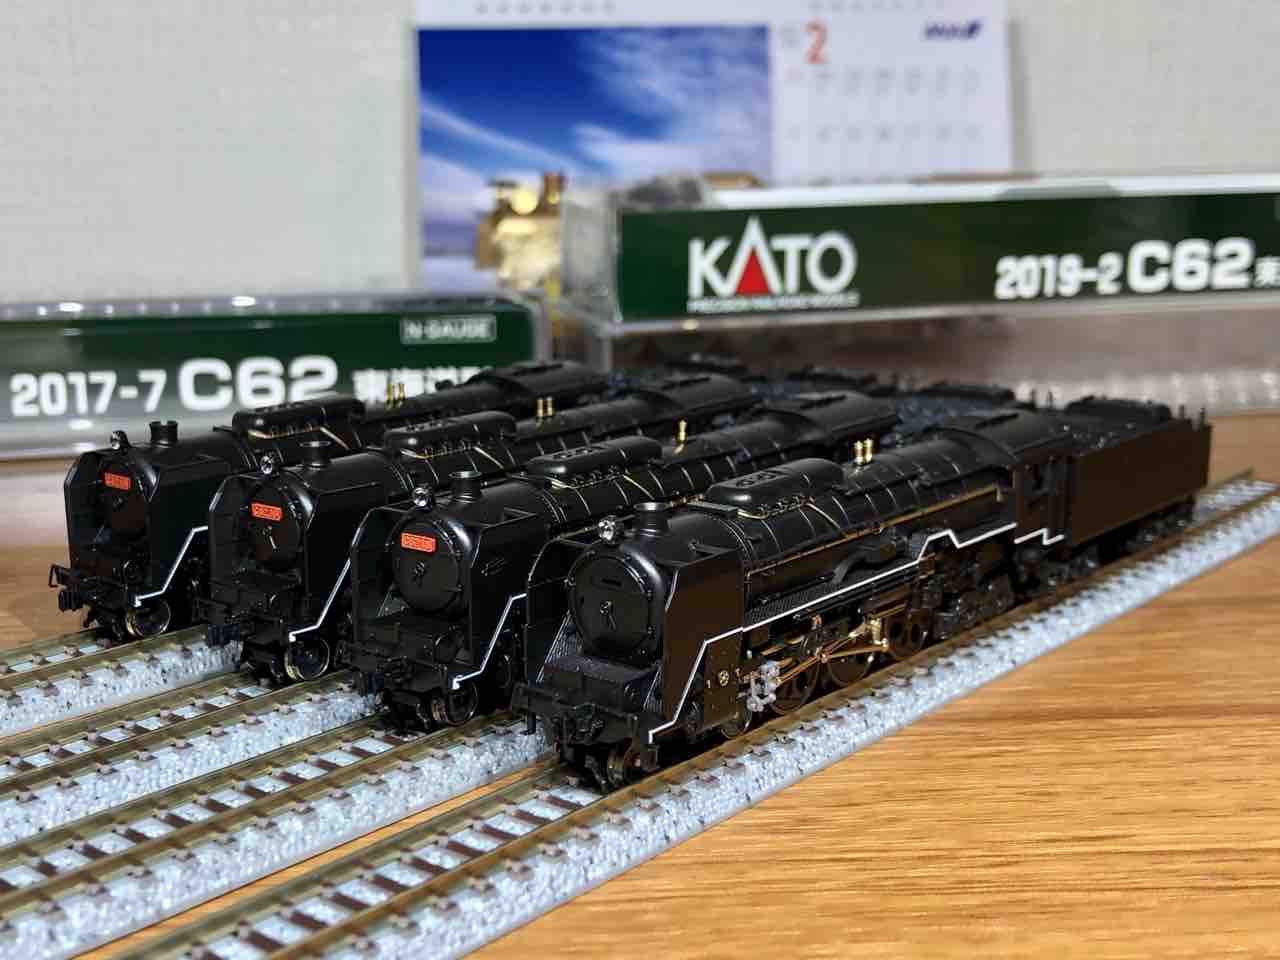 KATO C62 Nゲージ カトー - 鉄道模型